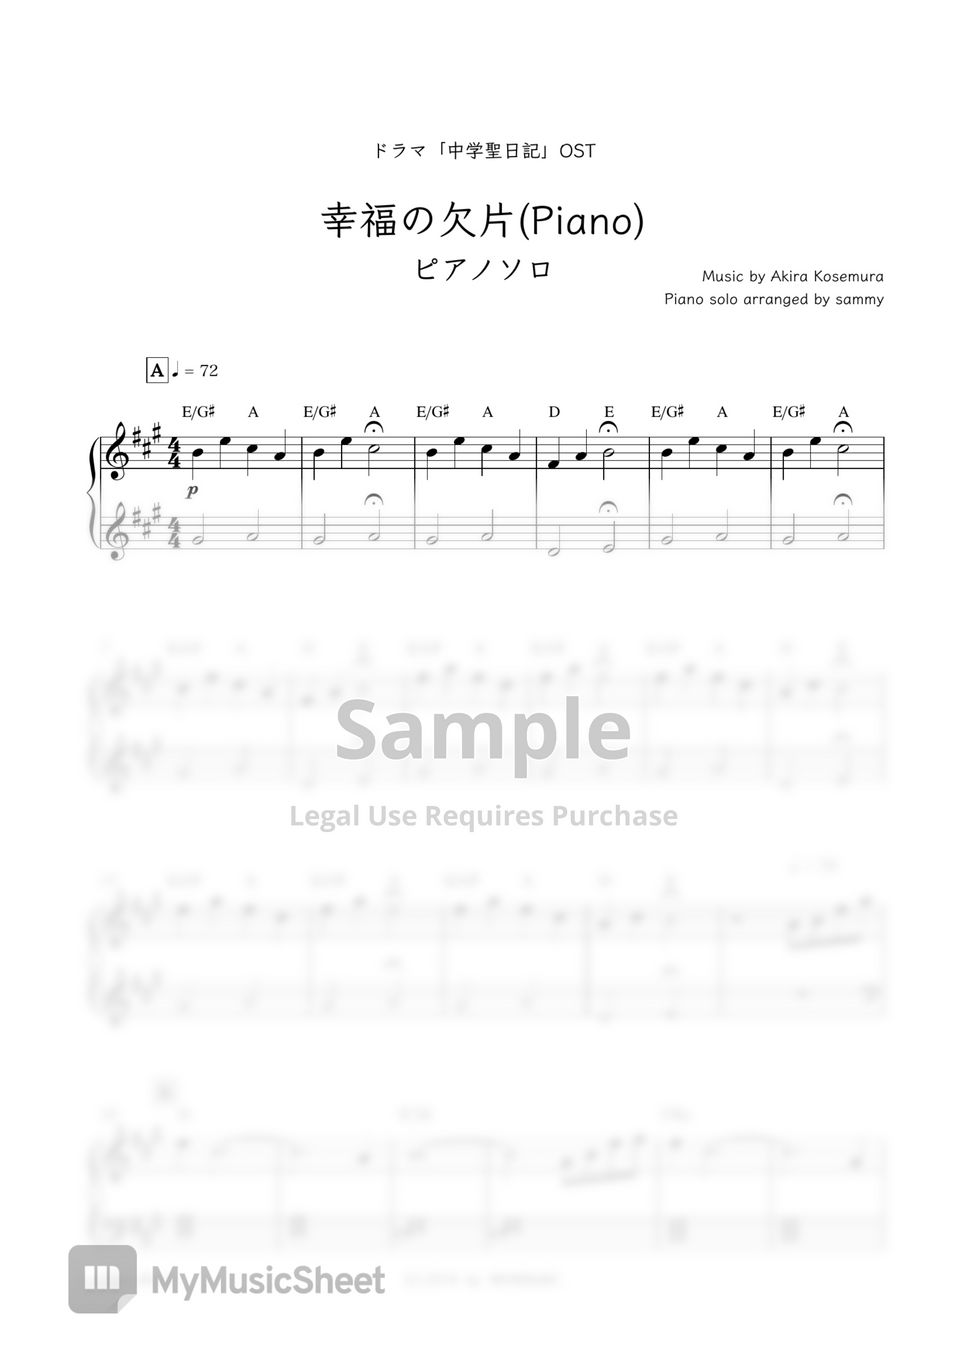 日剧《中学圣日记 (中学聖日記) 》插曲 - Kofuku No Kakera [Piano] (幸福の欠片 [Piano]) by sammy